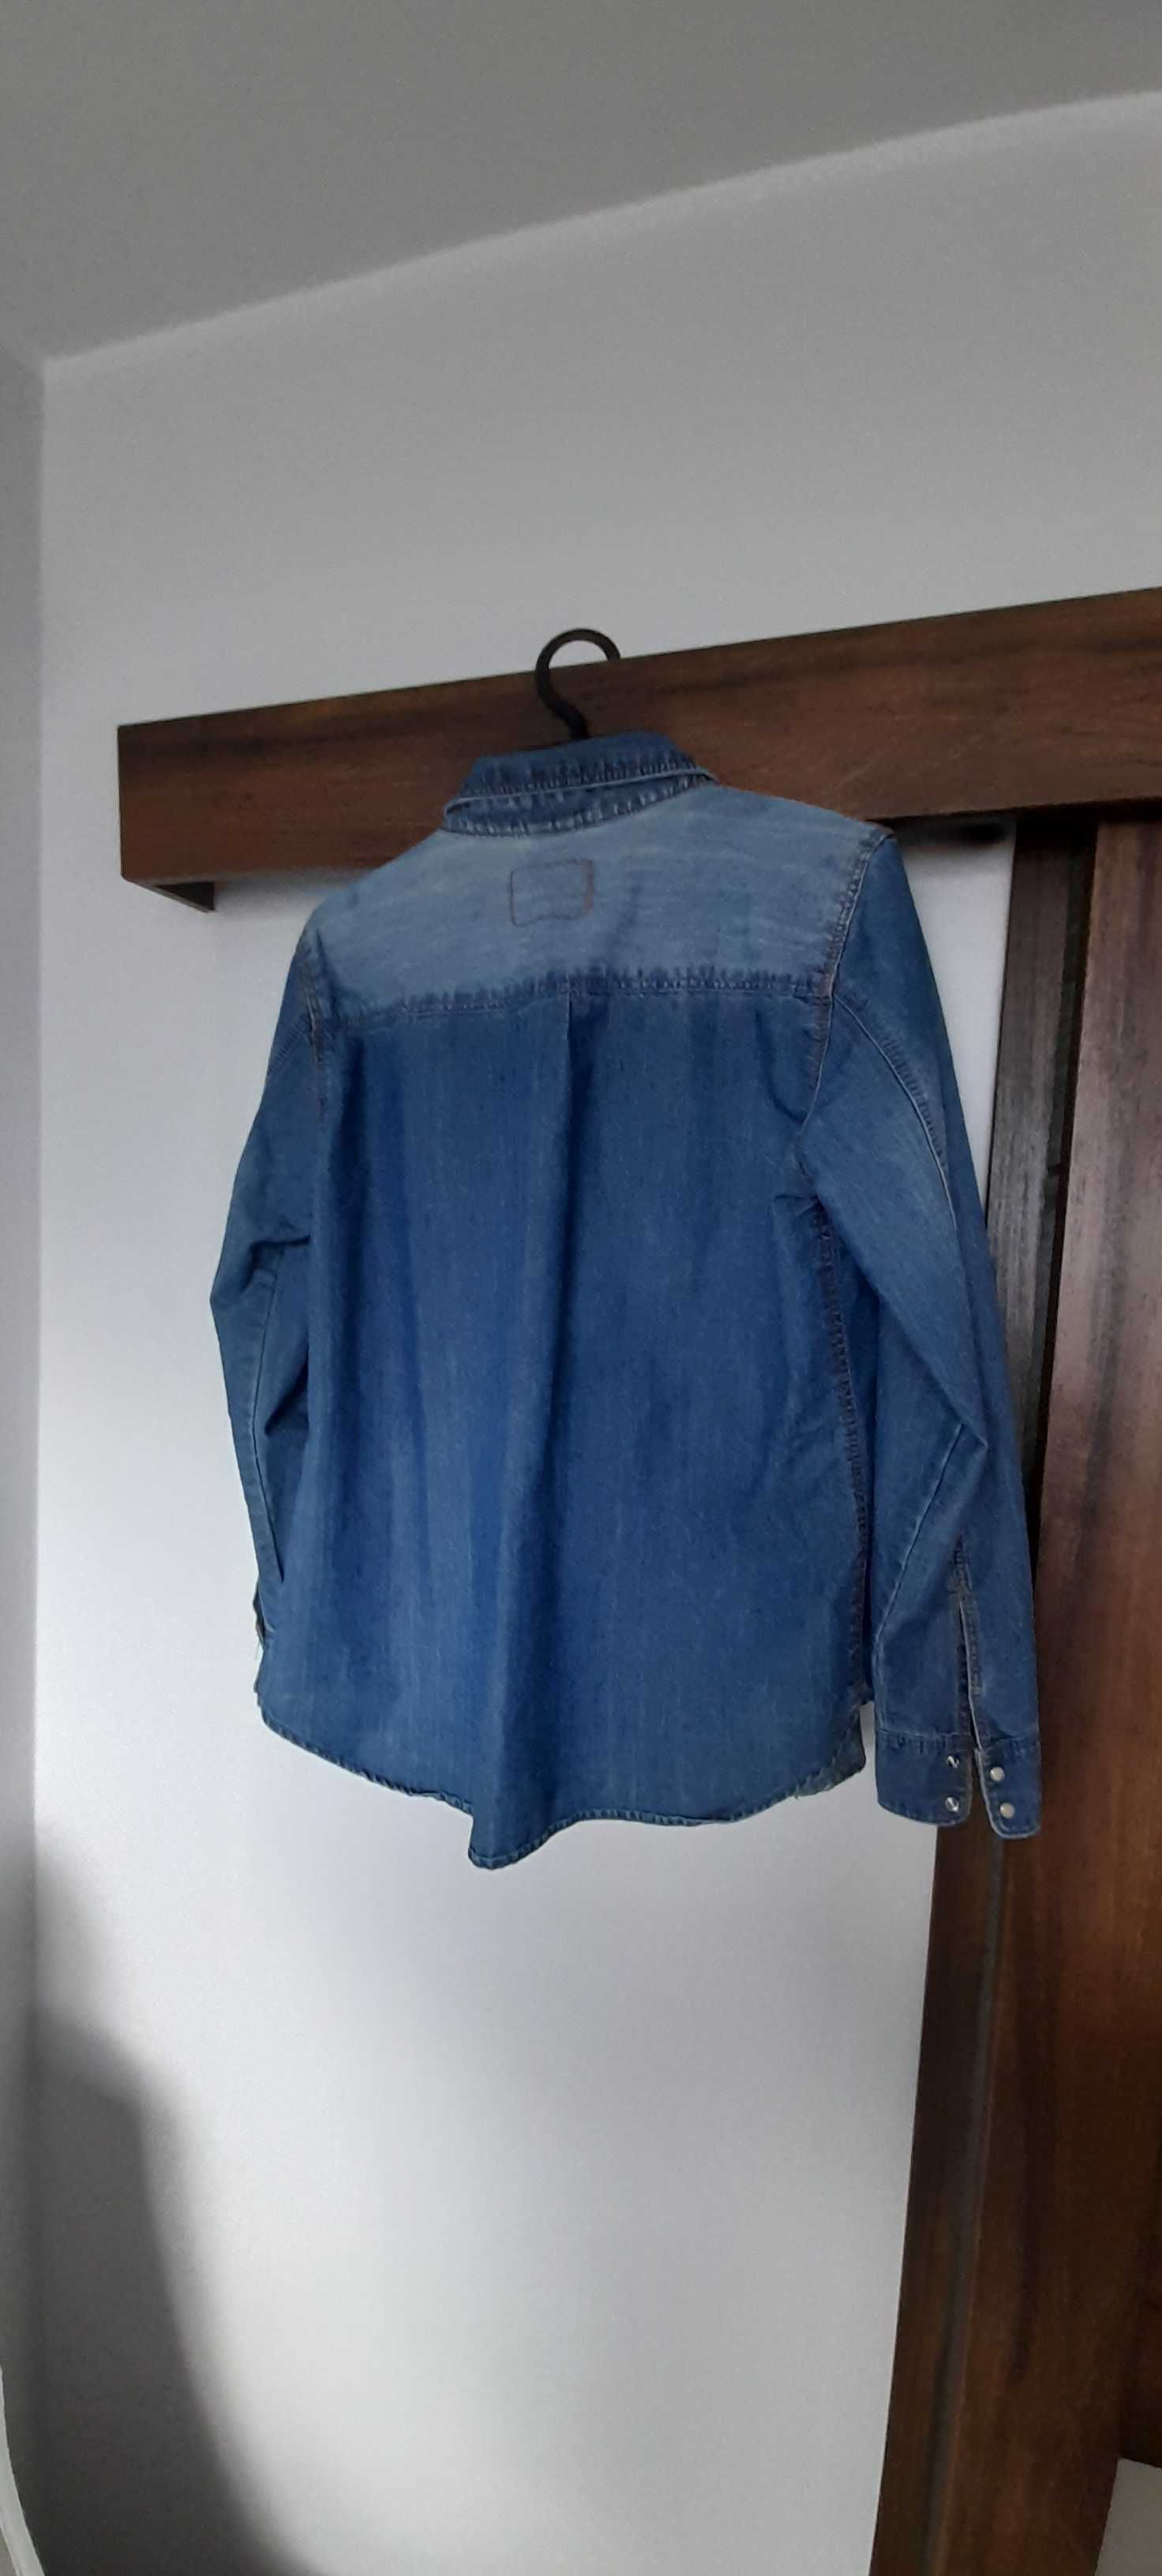 Koszula bluza jeansowa H&M& DENIM 44 pachy 106 cm rękaw 60 cm dł,65 cm